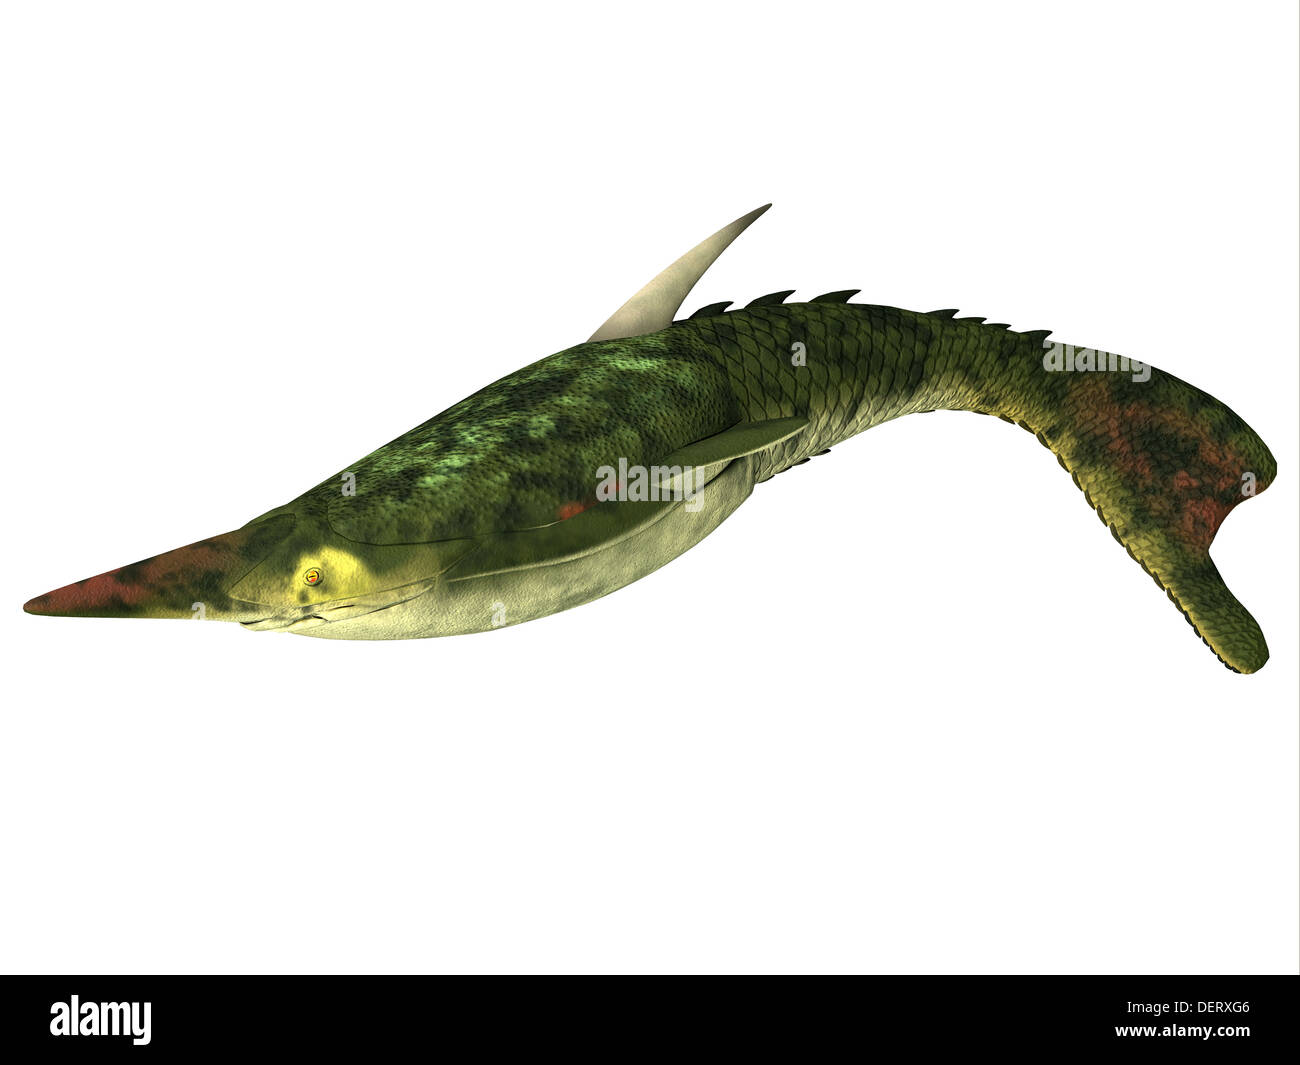 Pteraspis è un genere estinto di pesci jawless che visse nel periodo Devoniano. Foto Stock